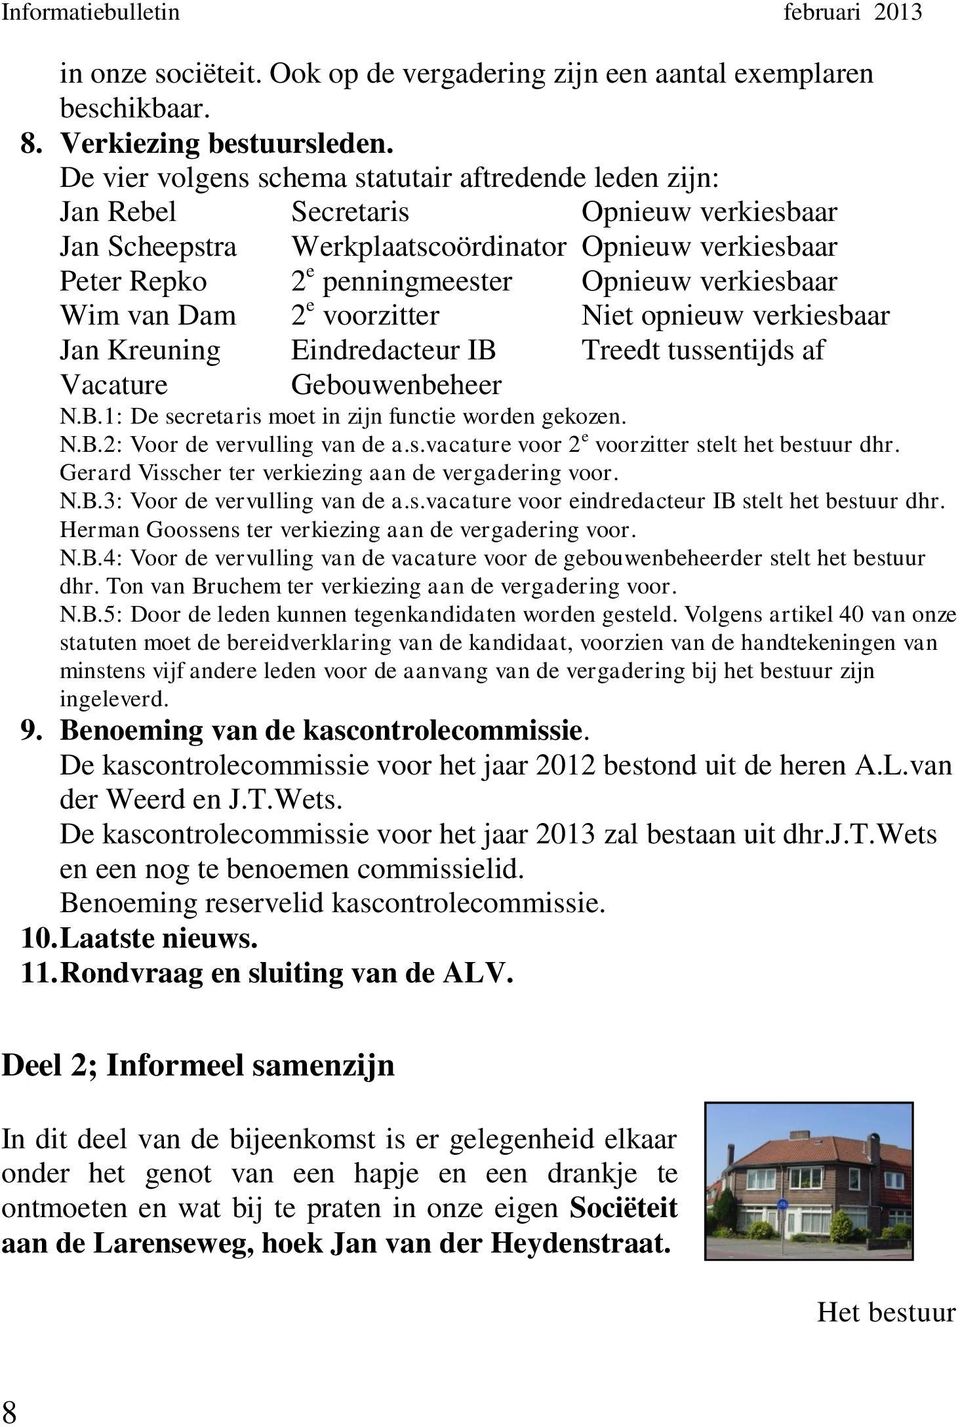 verkiesbaar Wim van Dam 2 e voorzitter Niet opnieuw verkiesbaar Jan Kreuning Eindredacteur IB Treedt tussentijds af Vacature Gebouwenbeheer N.B.1: De secretaris moet in zijn functie worden gekozen. N.B.2: Voor de vervulling van de a.